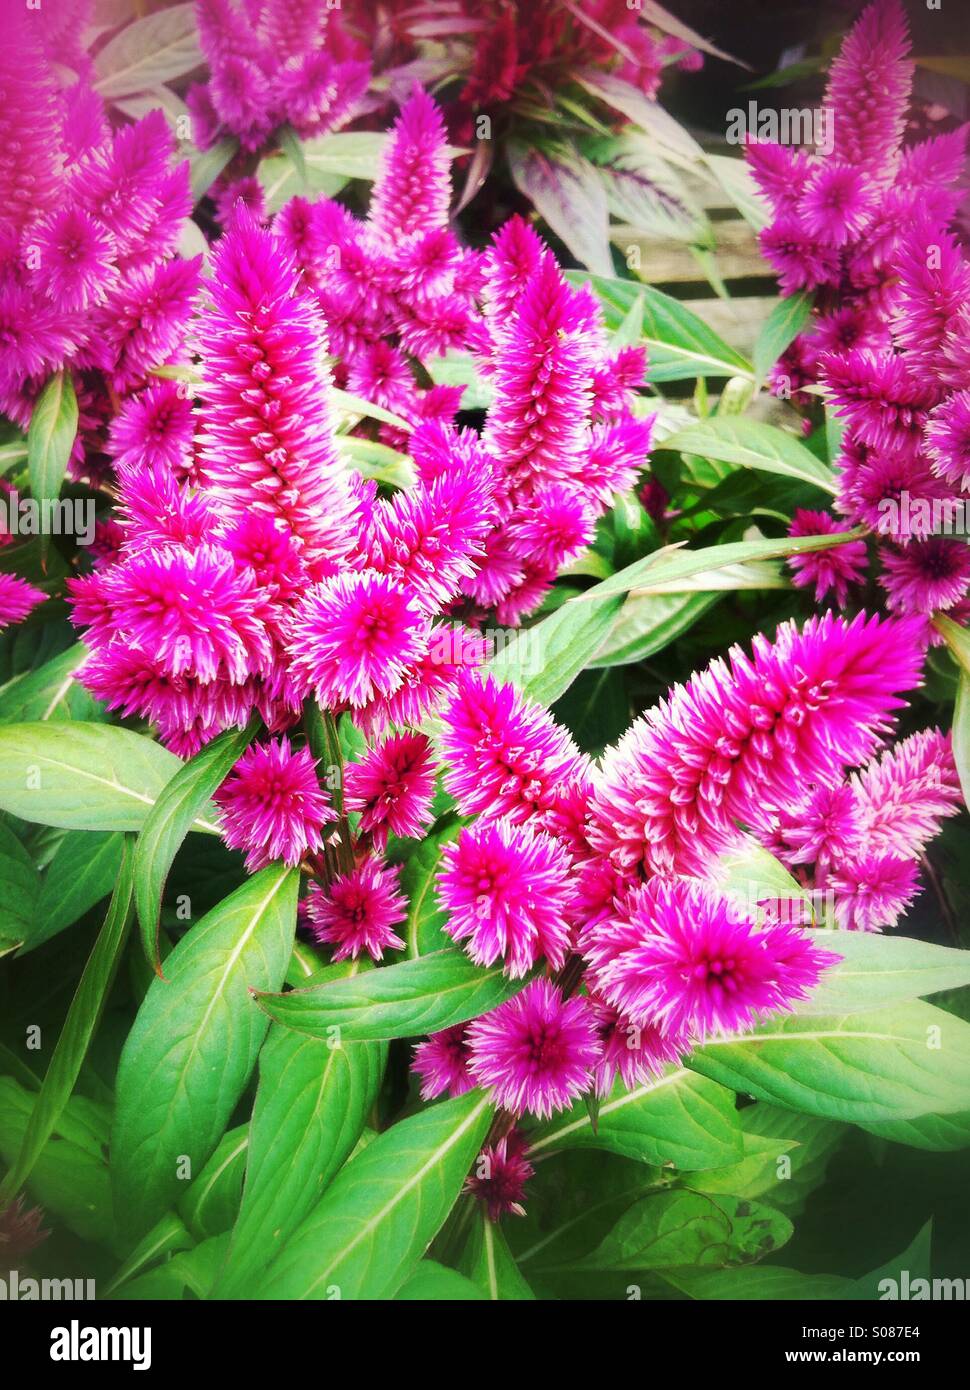 Pink brush flowers Stock Photo